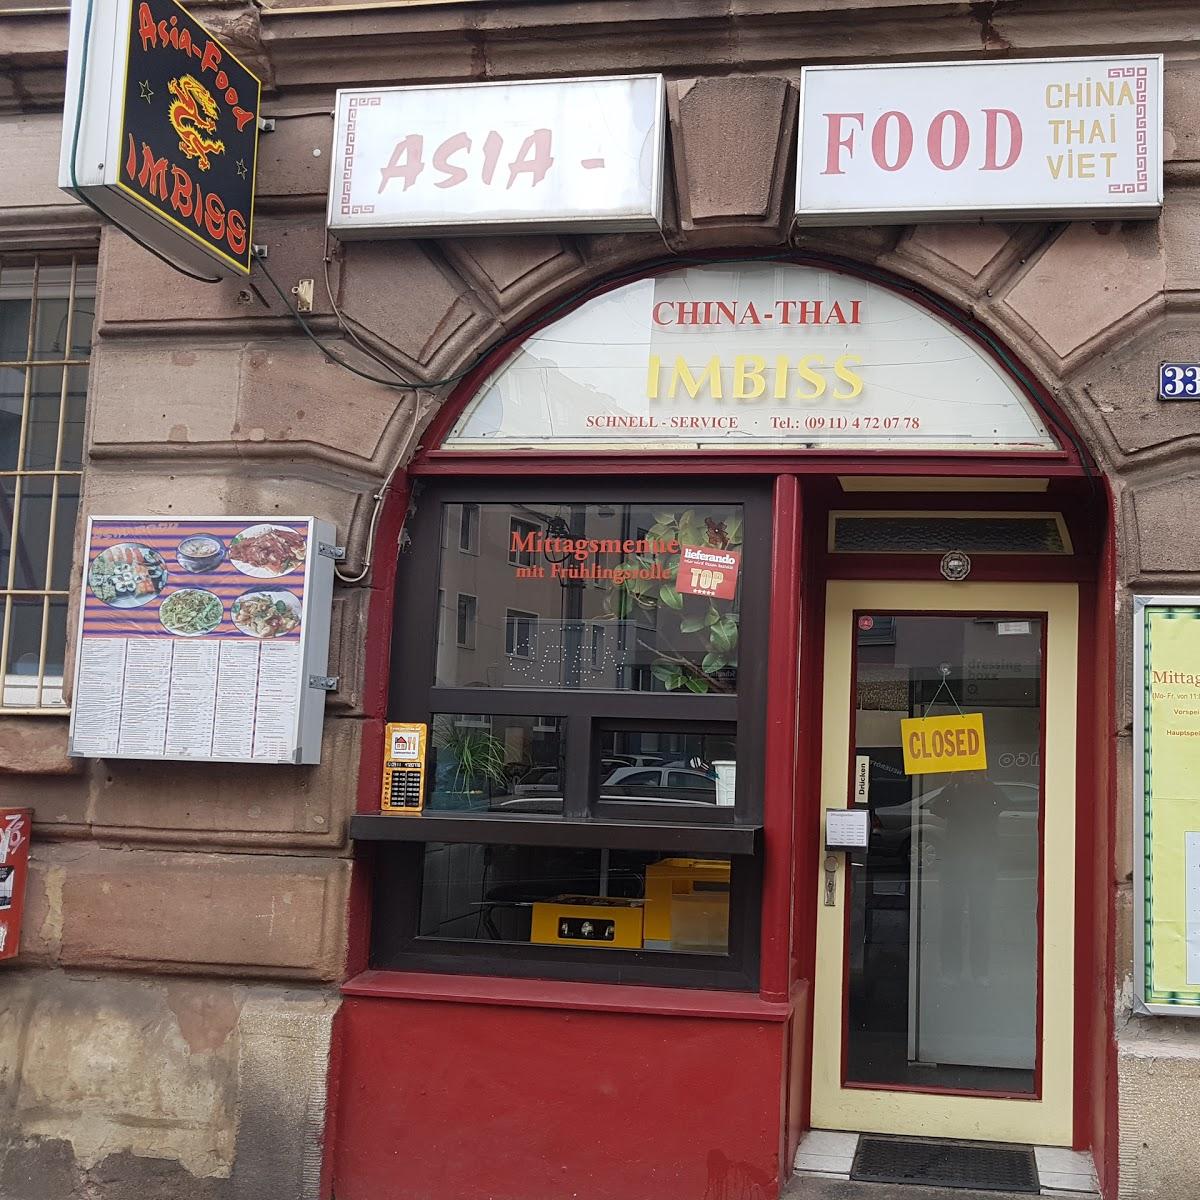 Restaurant "Asia Food" in Nürnberg